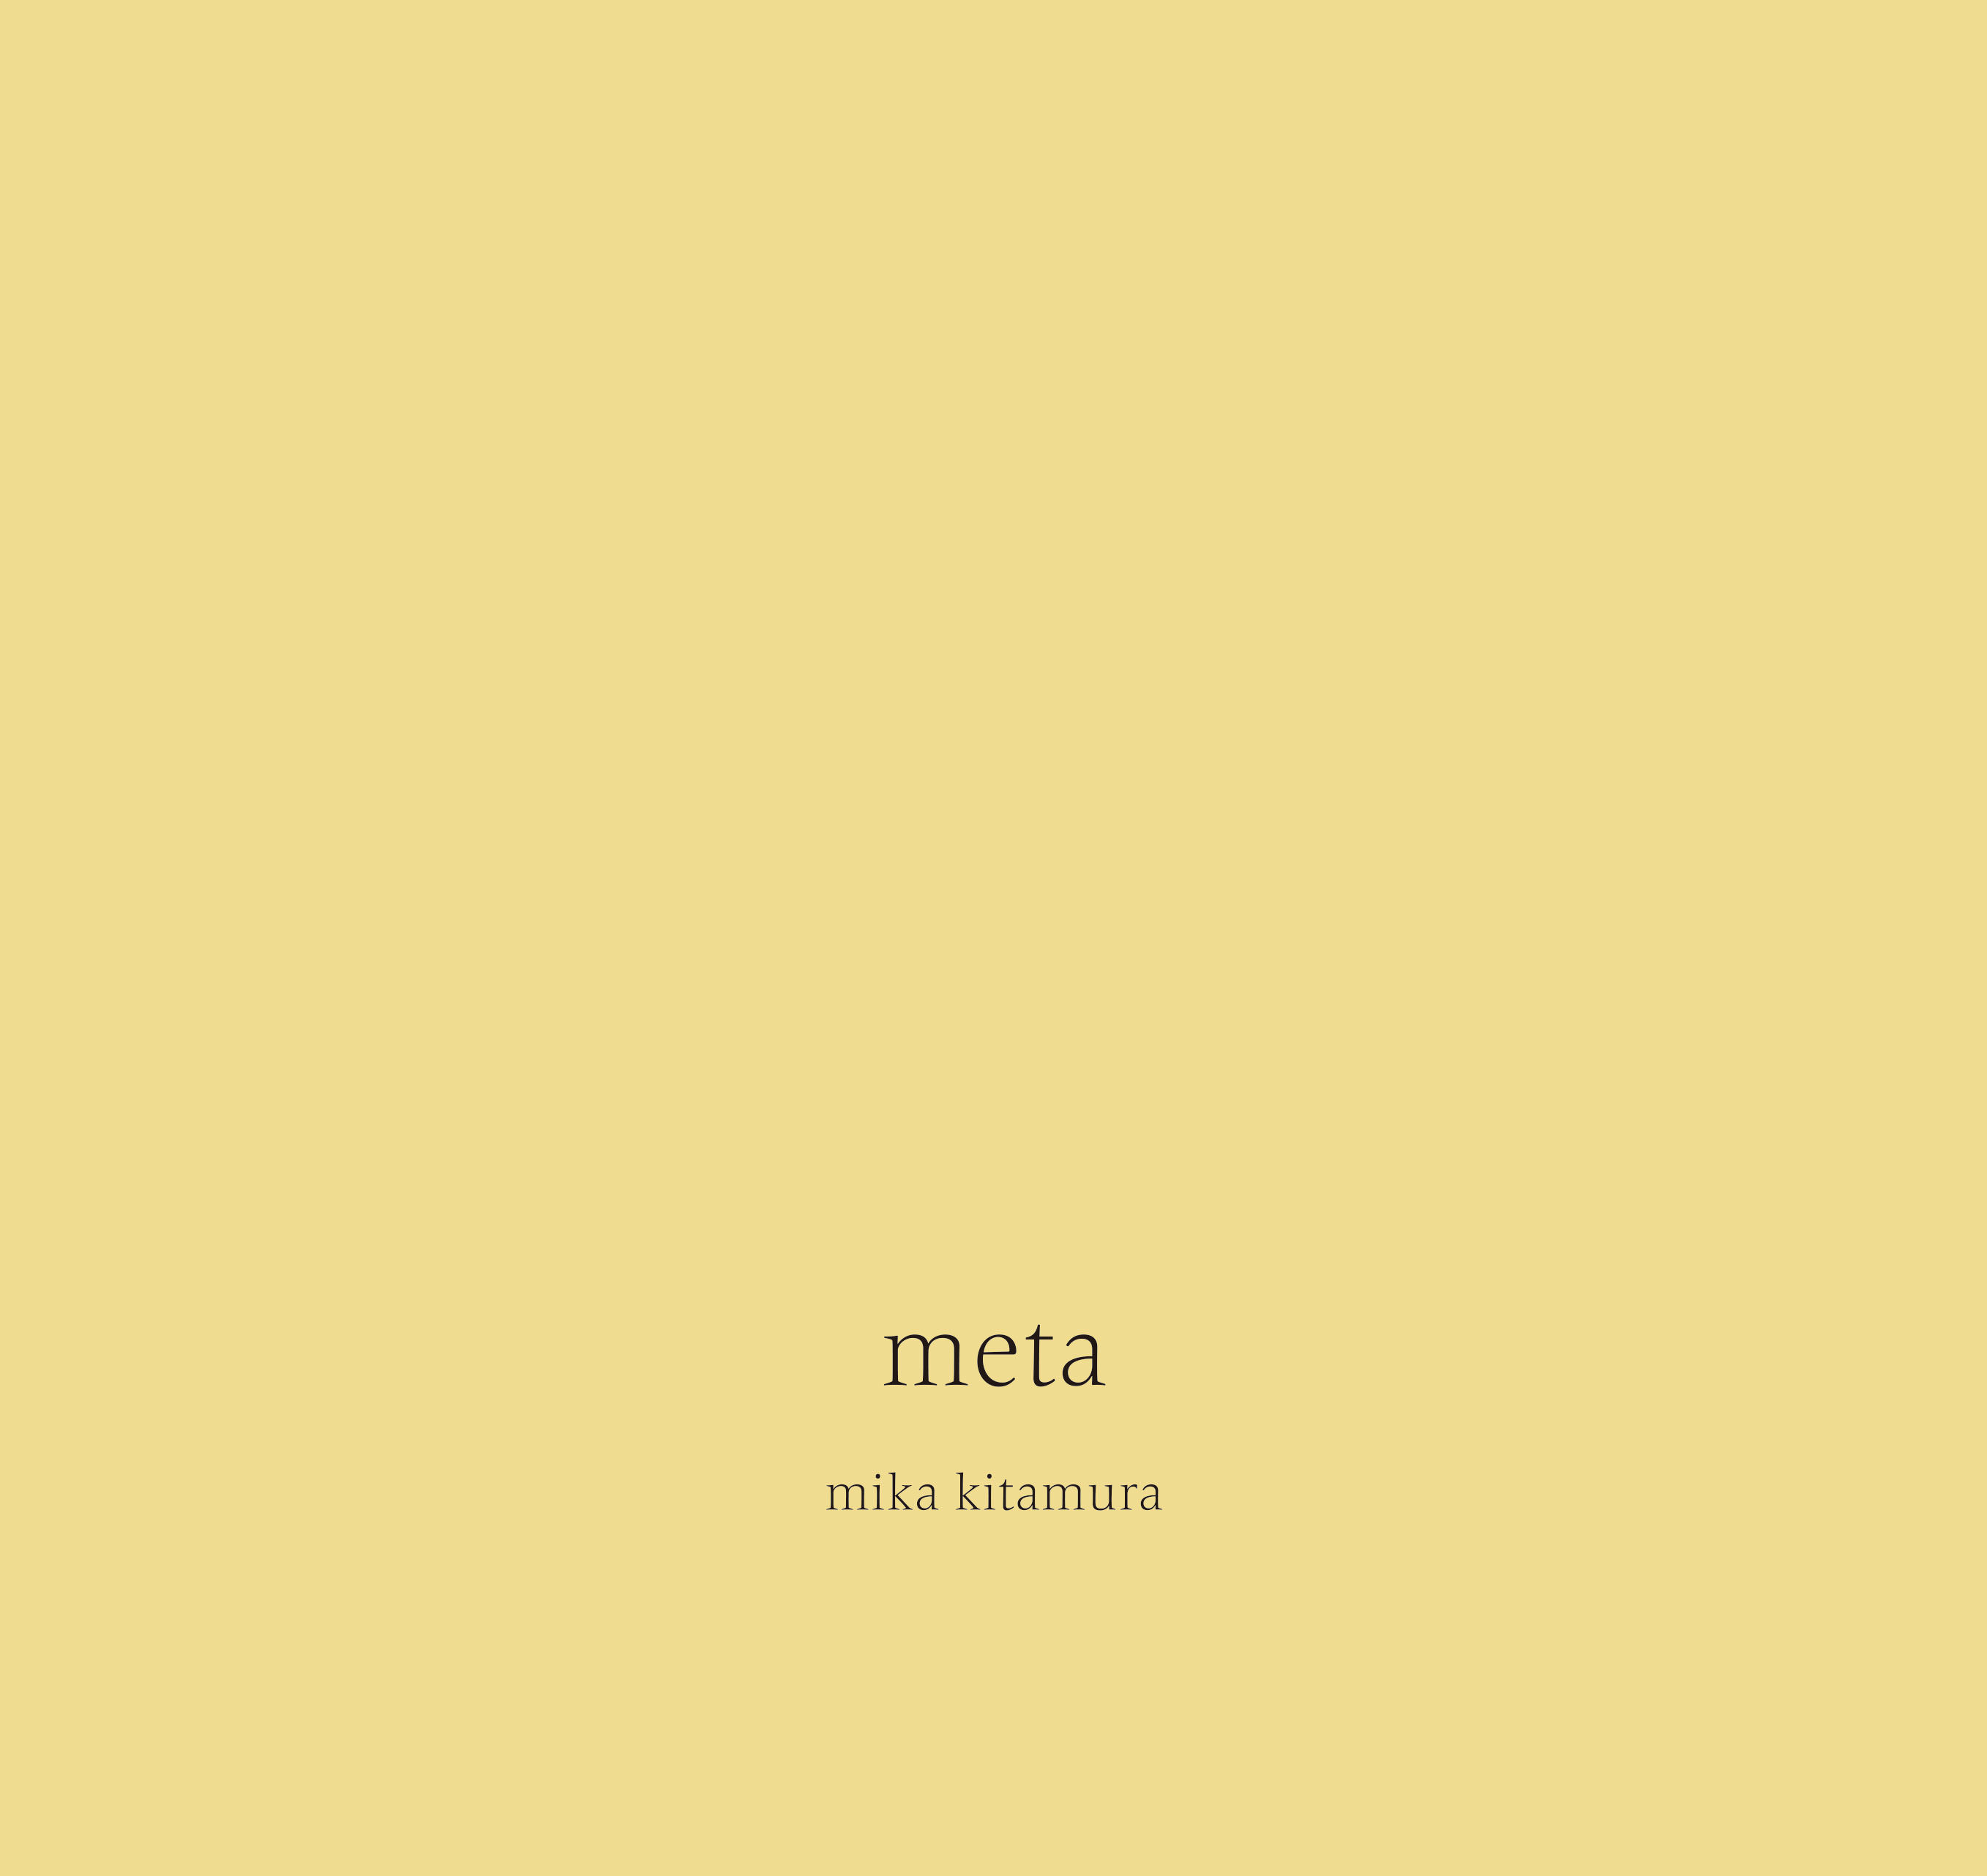 喜多村みか「meta」 Kitamura Mika “meta” - Alt_Medium